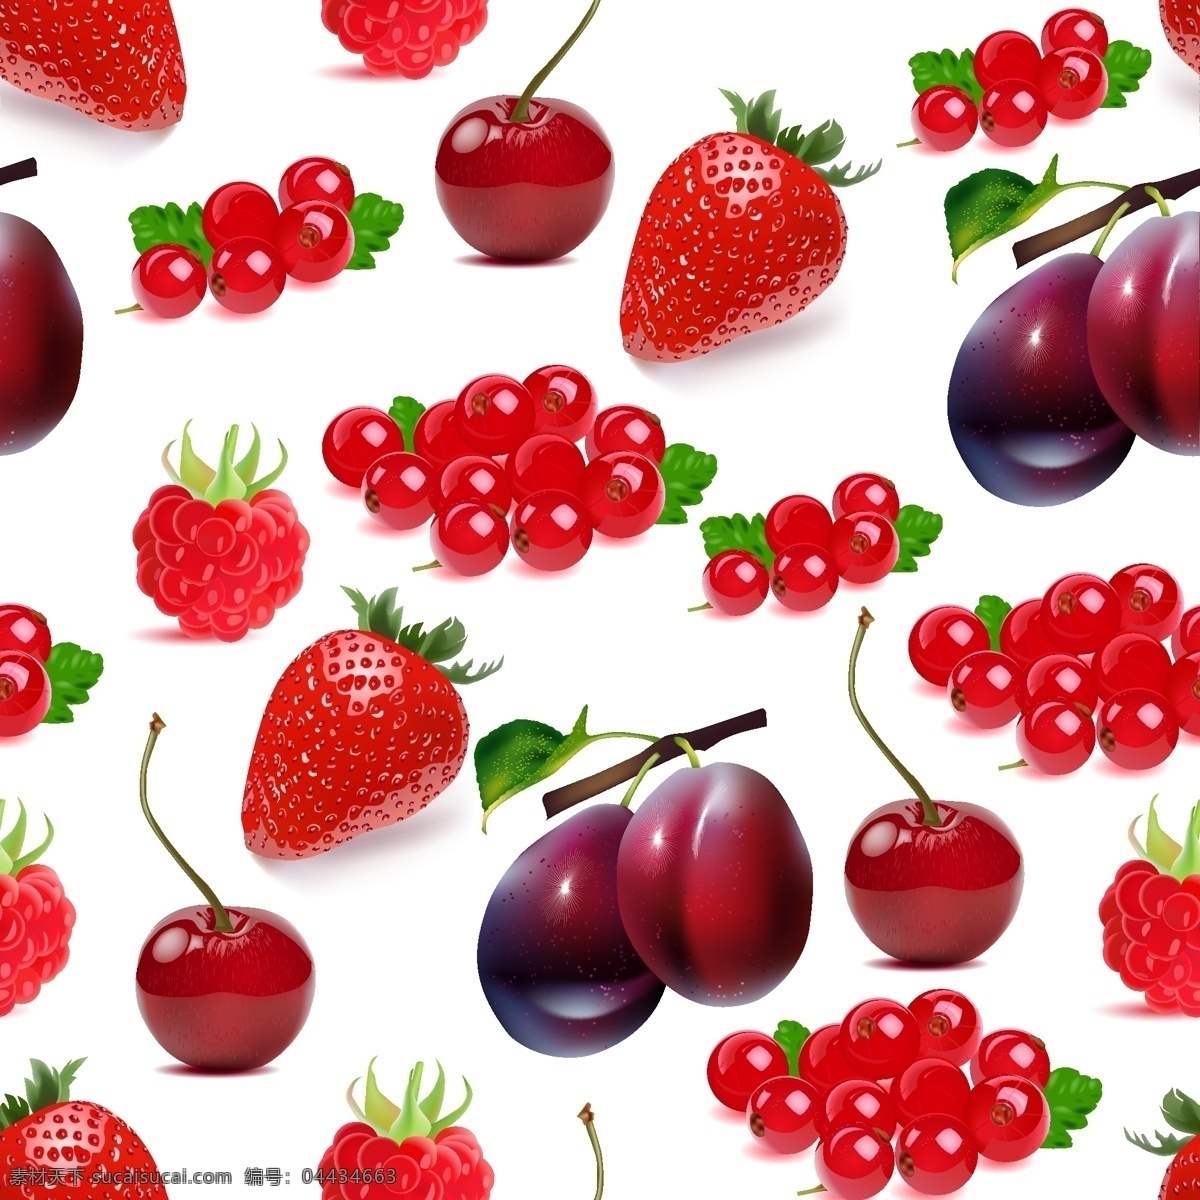 水果 背景图片 背景 草莓 底纹 卡片 生物世界 手绘 水果背景 水果矢量 矢量 模板下载 樱桃